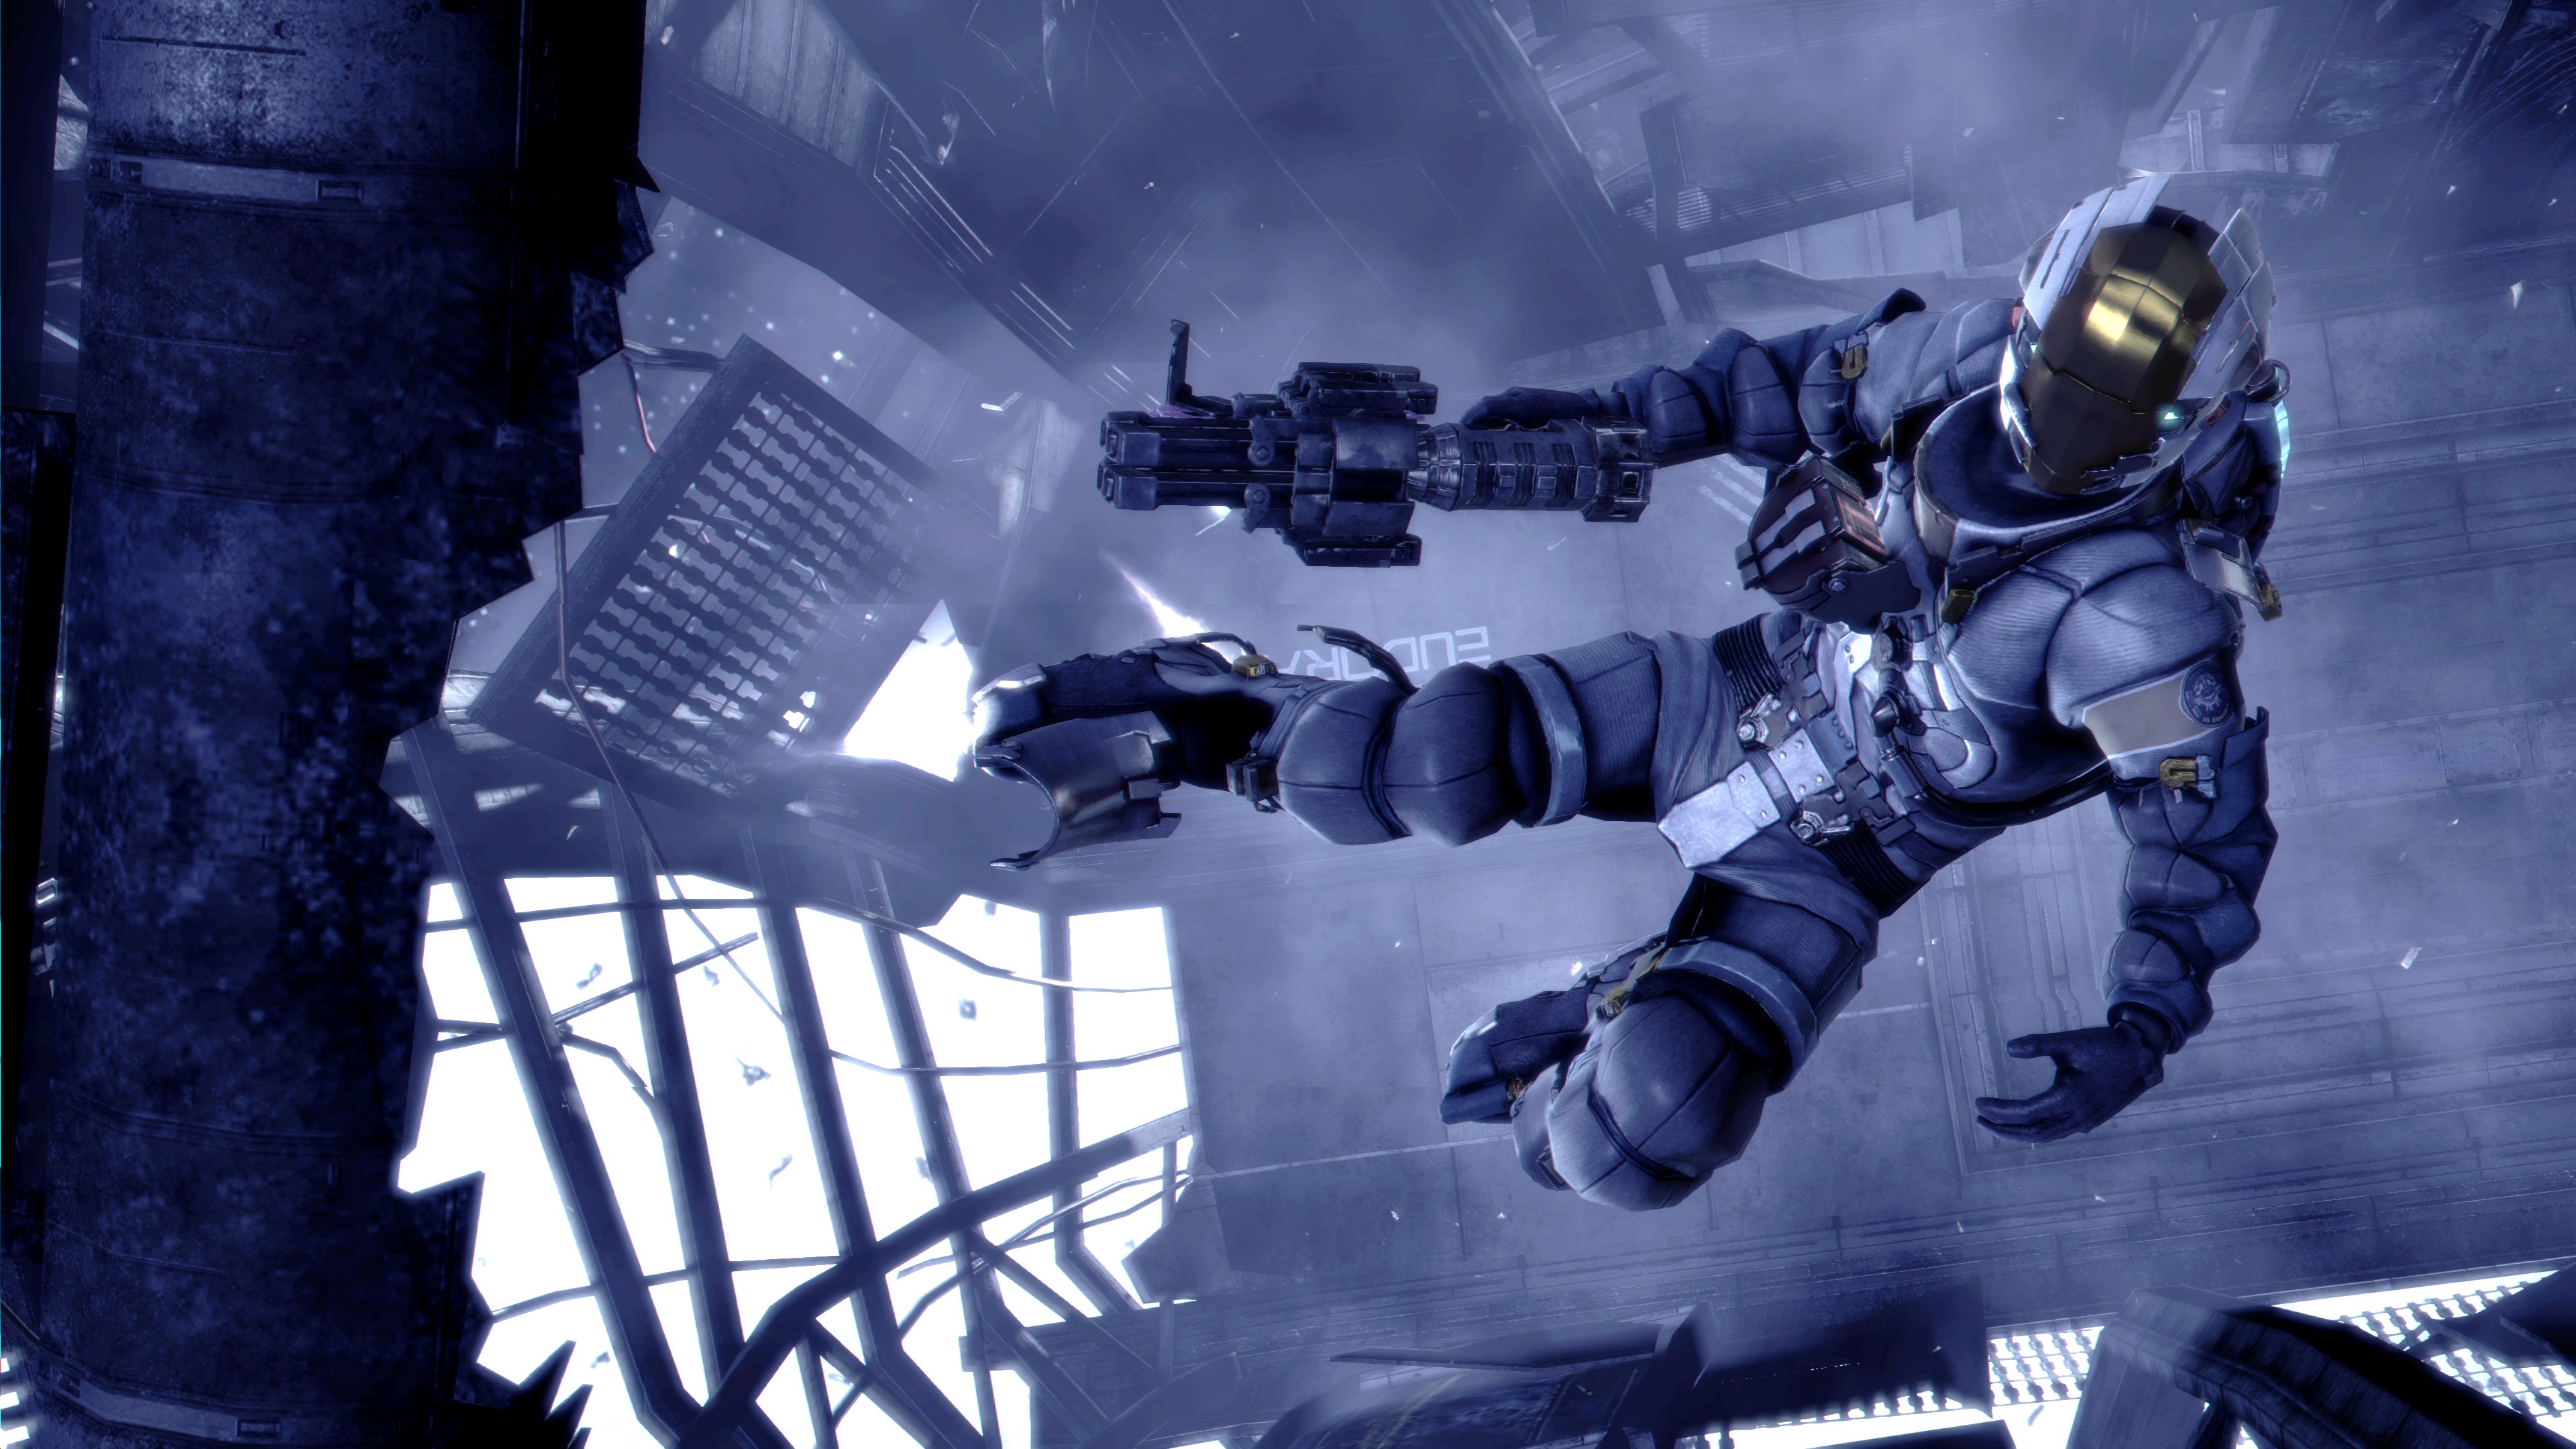 Download Dead Space 3 - Baixar para PC Grátis